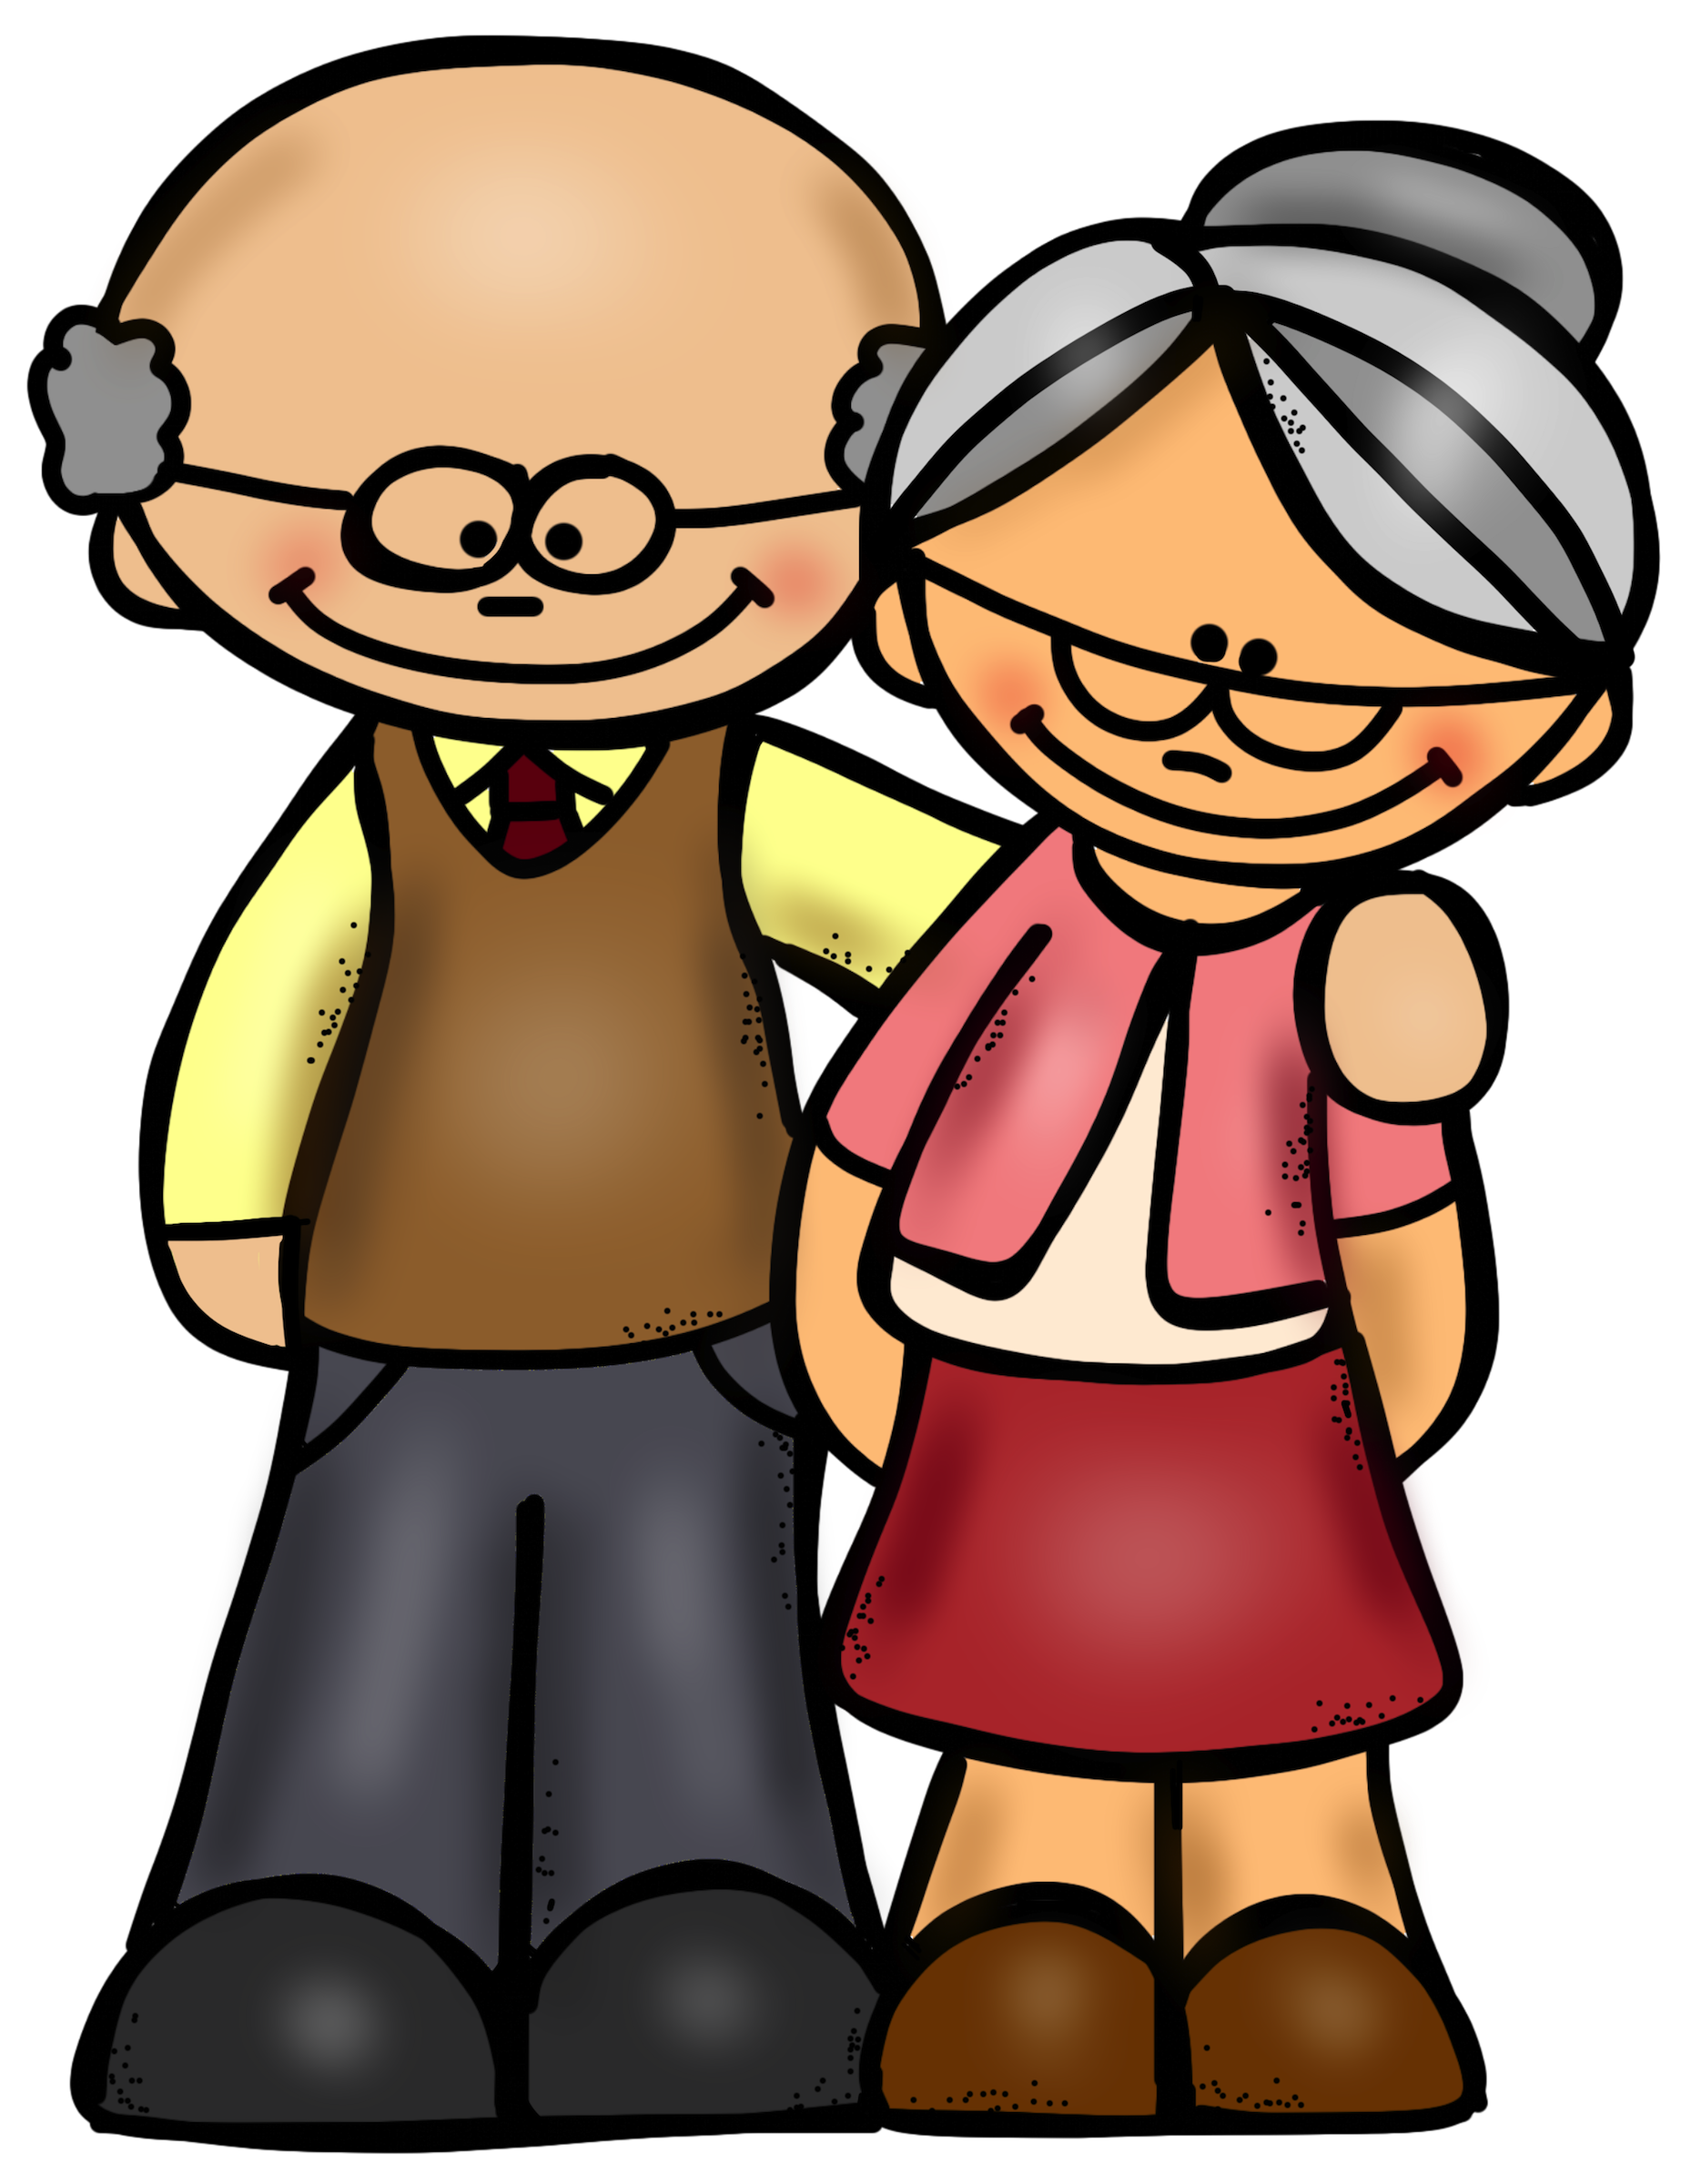 Grandparent clipart hug, Grandparent hug Transparent FREE for download